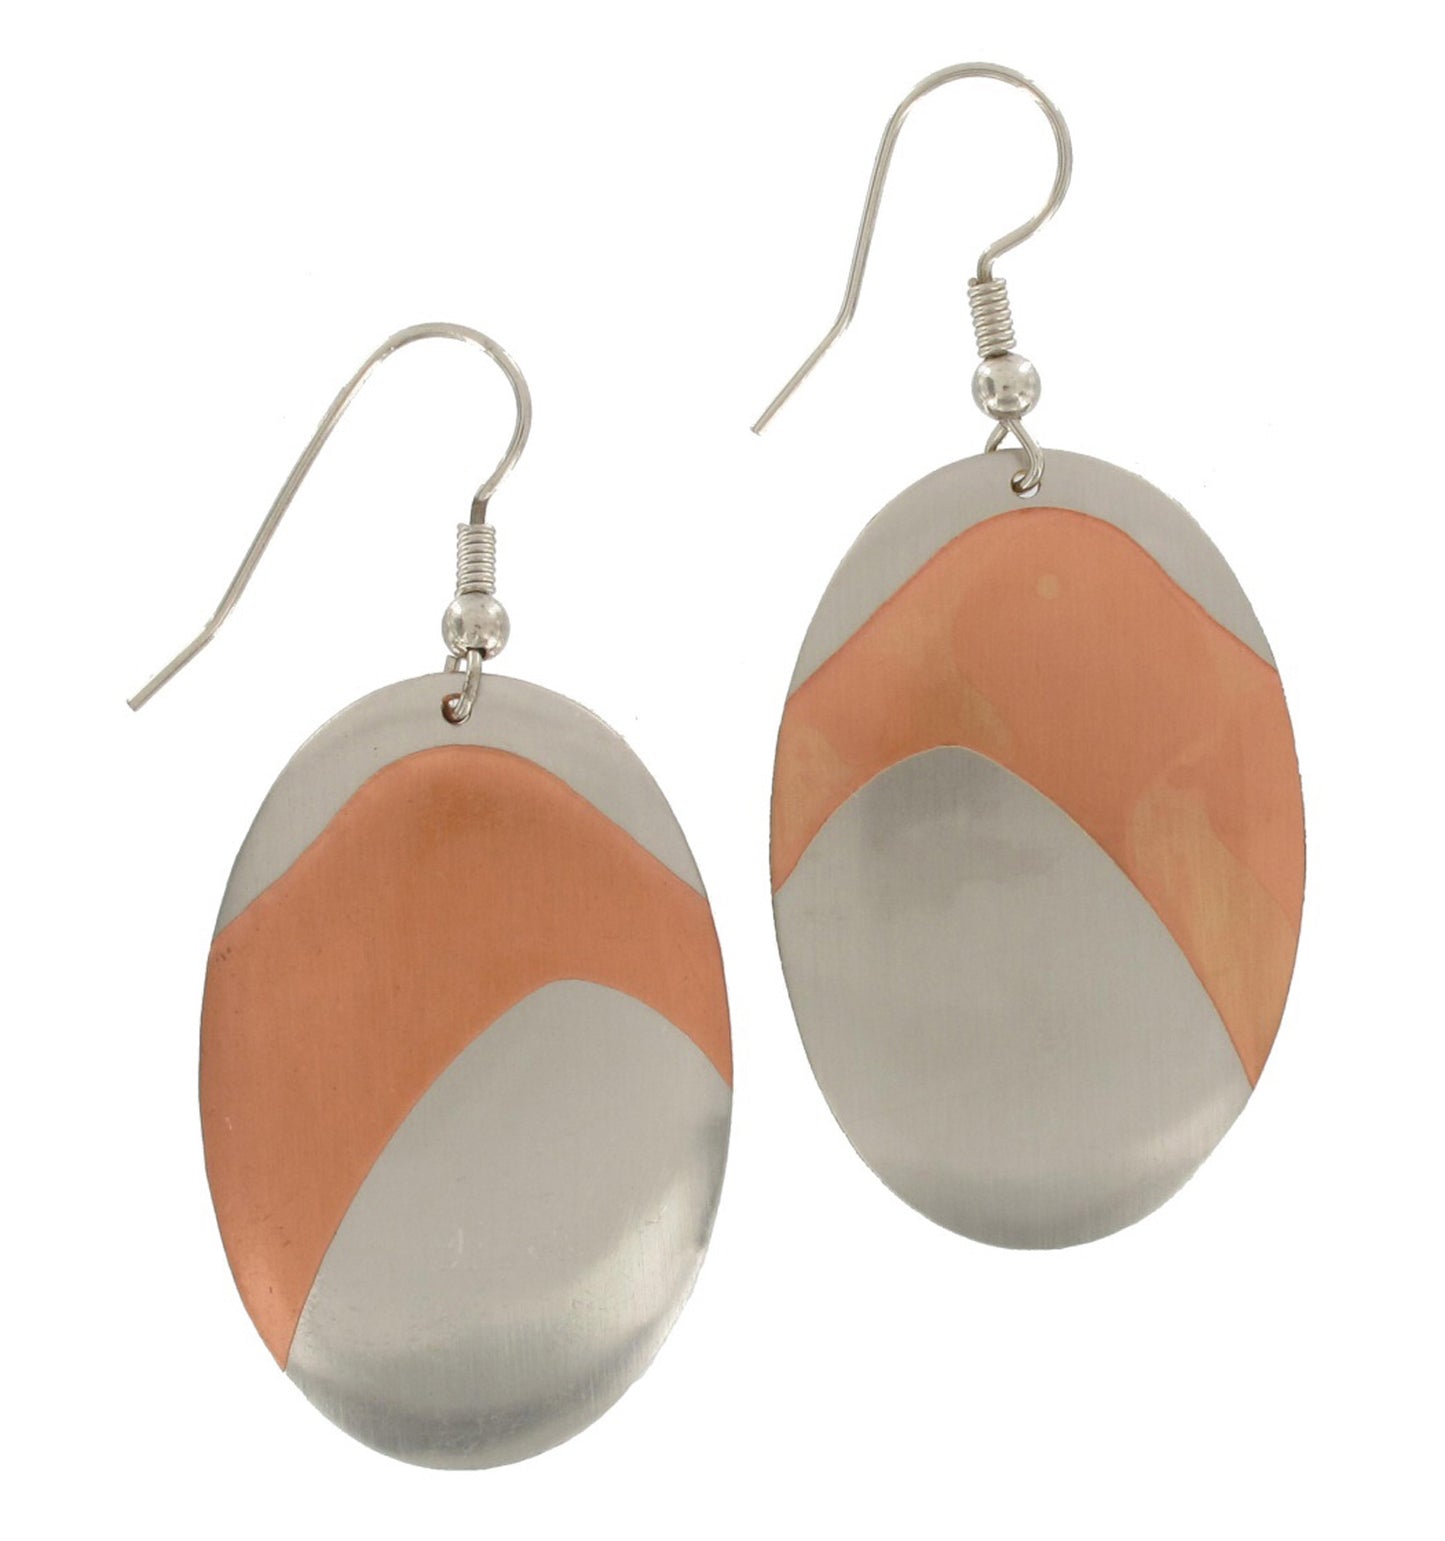 Oval Silver Copper Tone Dangle Pierced Earrings 1.5"